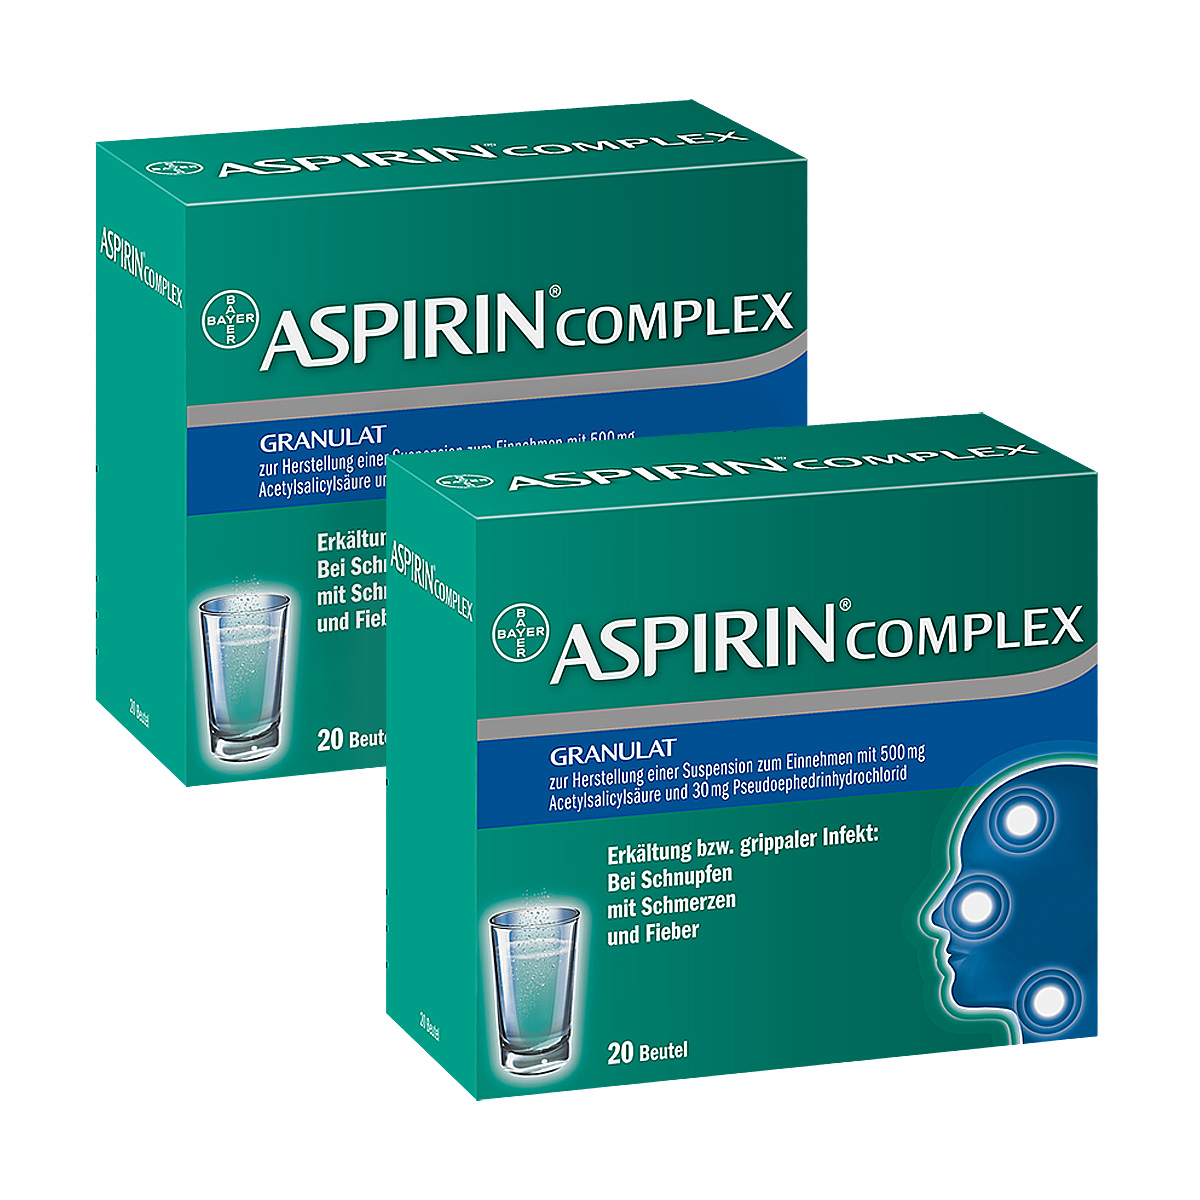 Ibuprofen Und Aspirin Complex